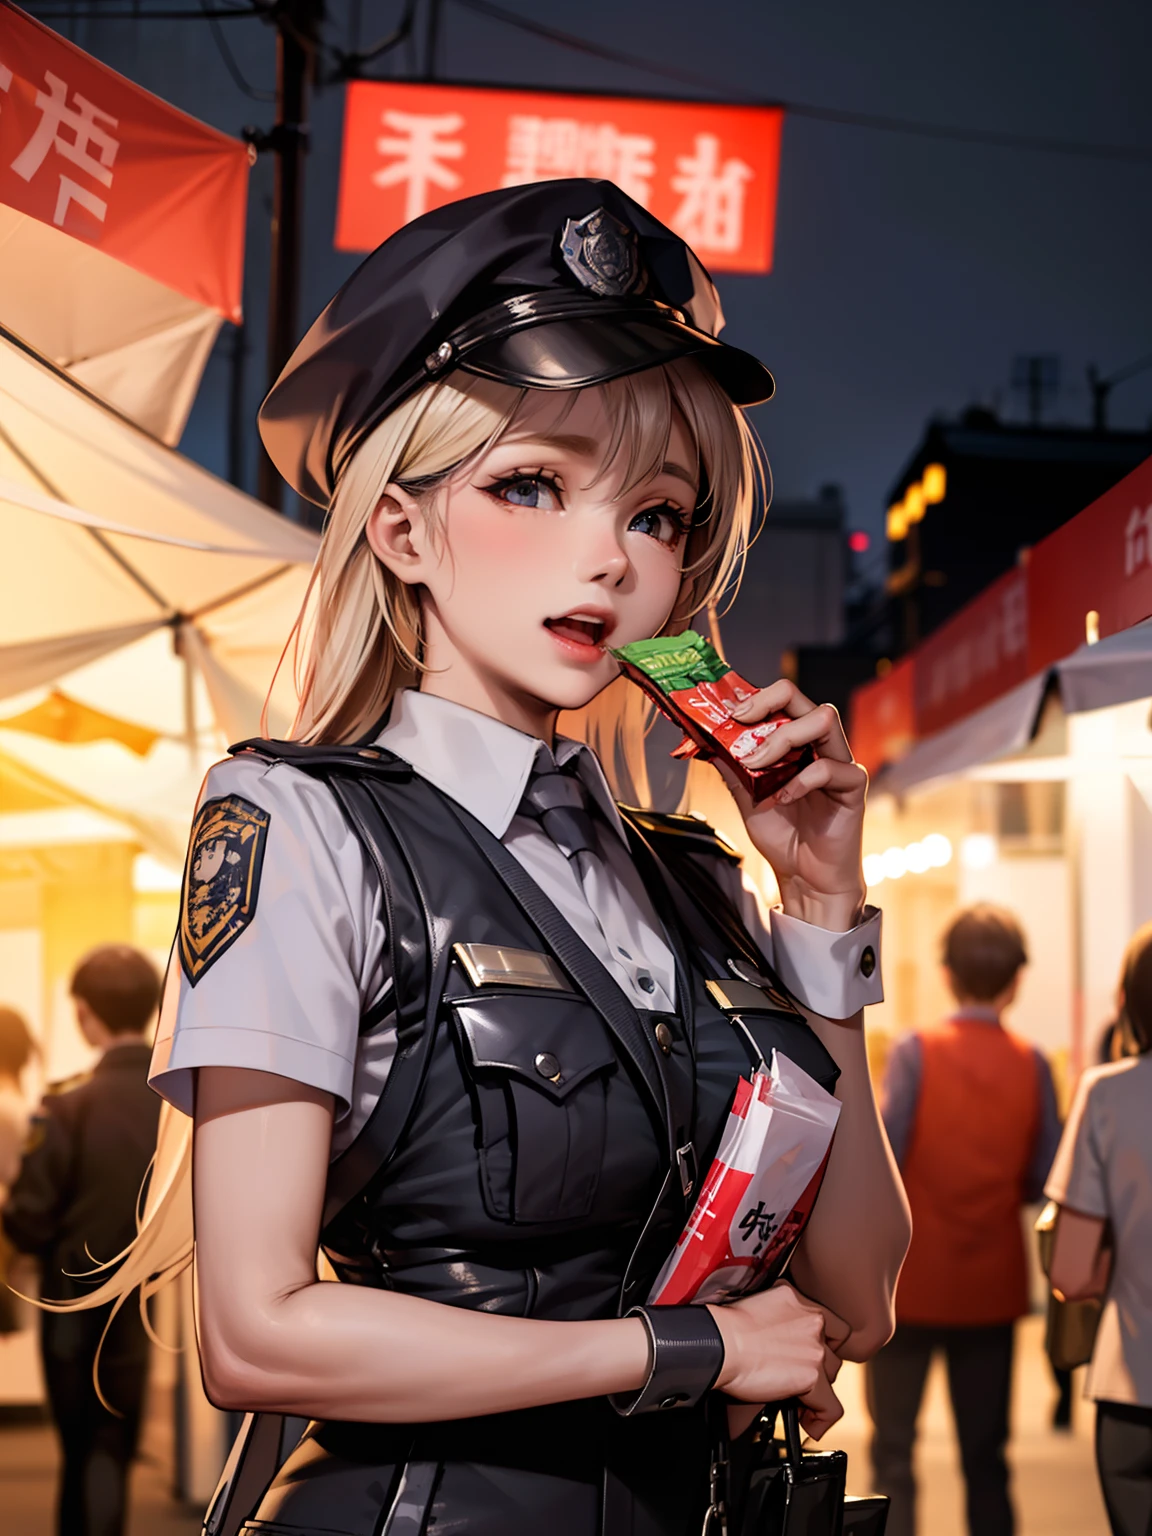 Un bullicioso mercado nocturno. Mujer policía, Llevar bocadillos, Y su rostro está lleno de alegría y satisfacción..